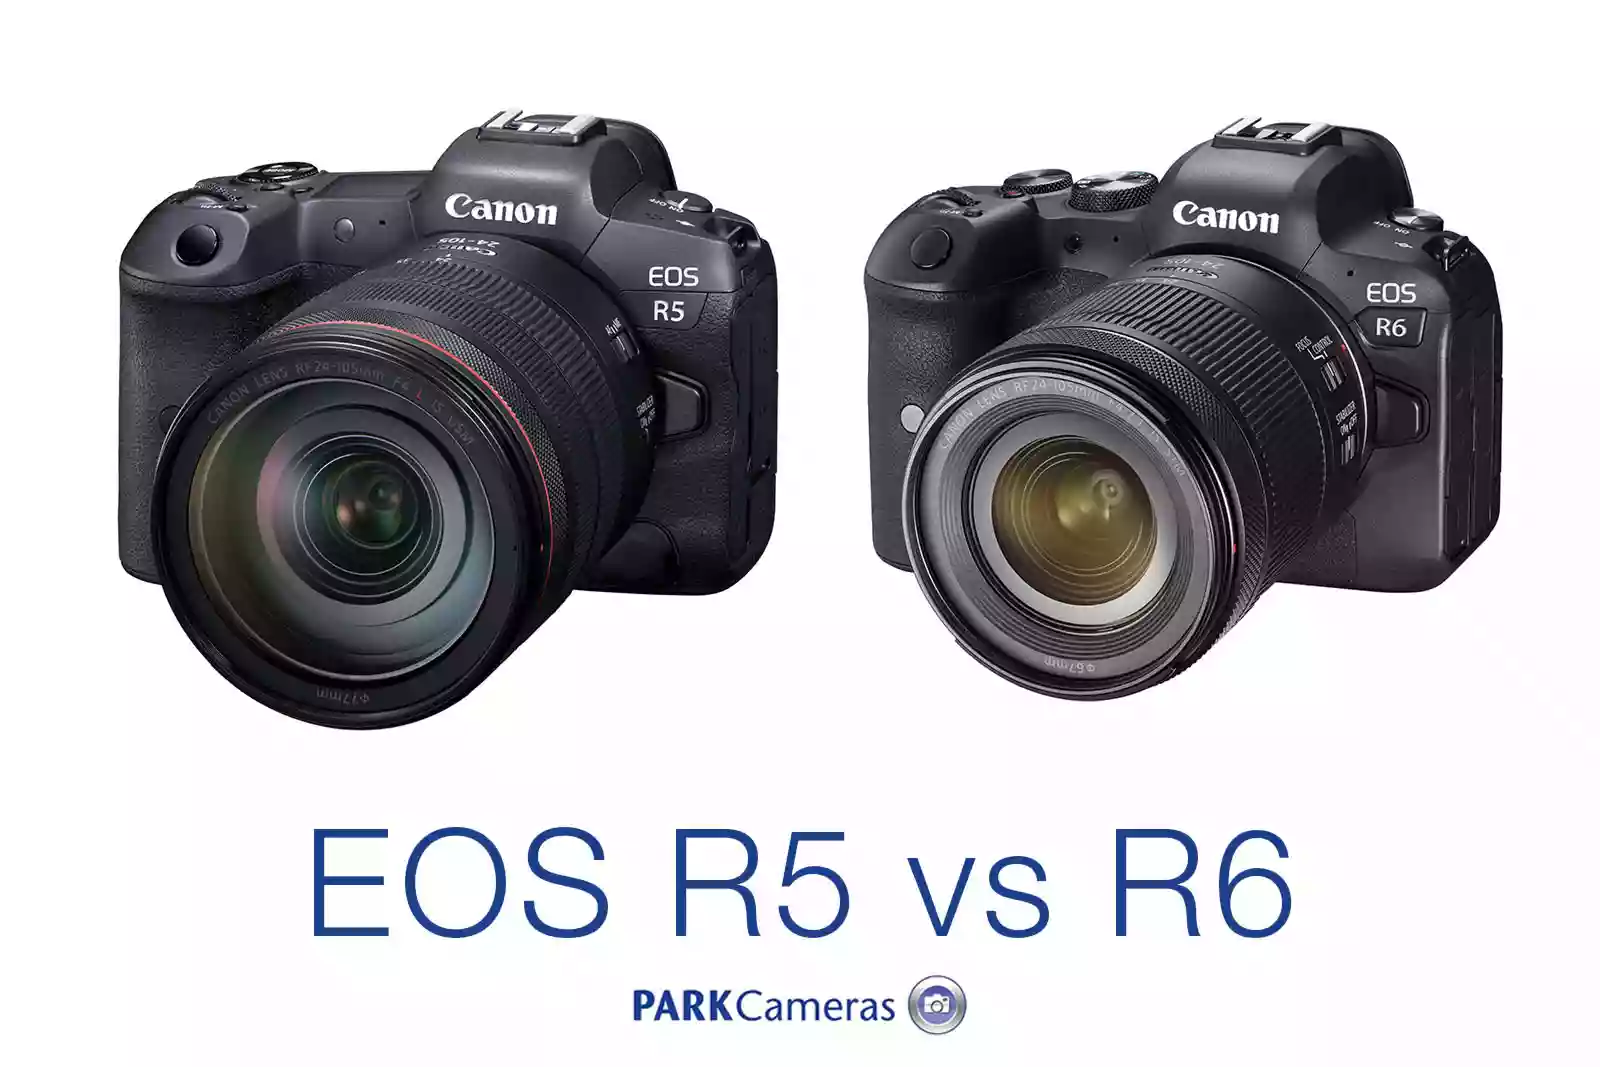 Canon EOS R5 and R6 compared